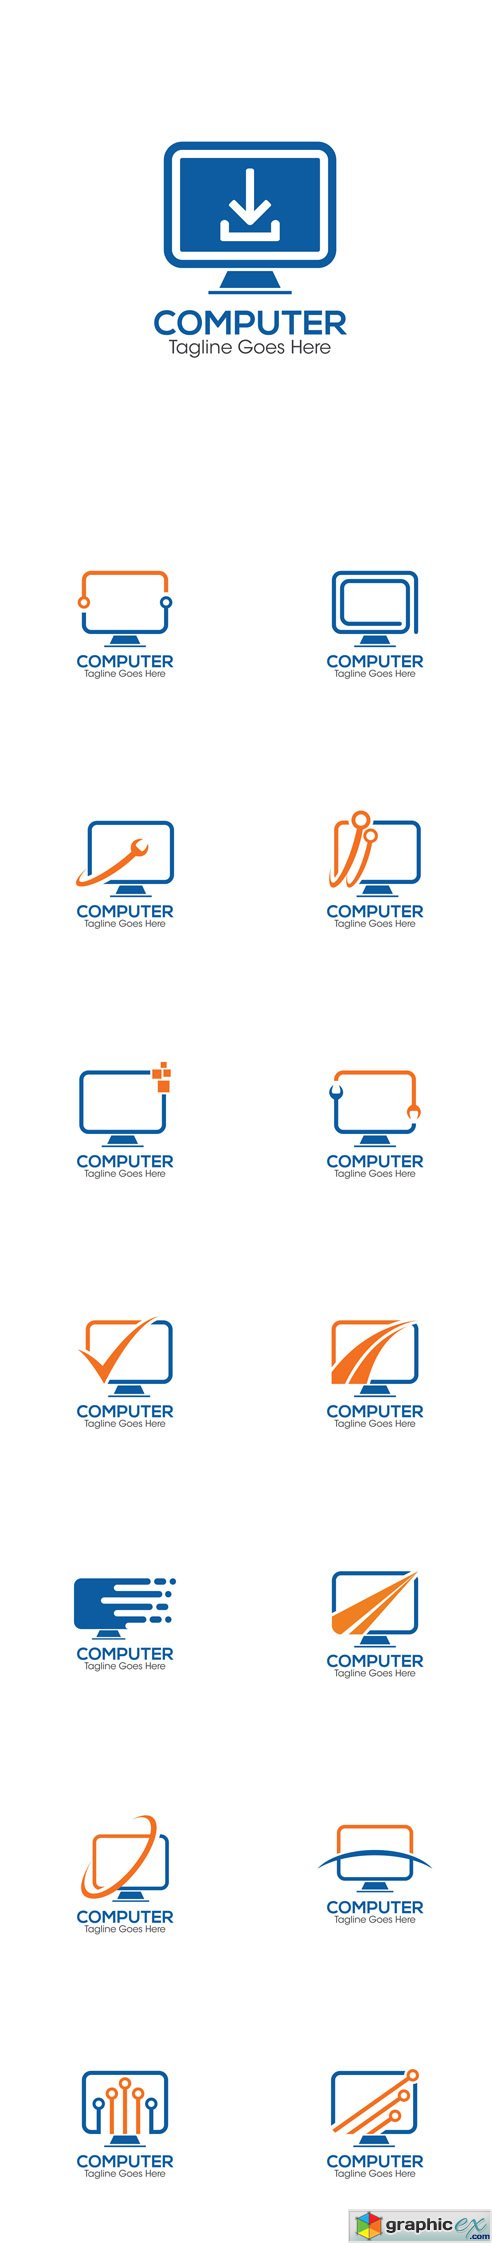 Computer Creative Concept Logo Design Templates